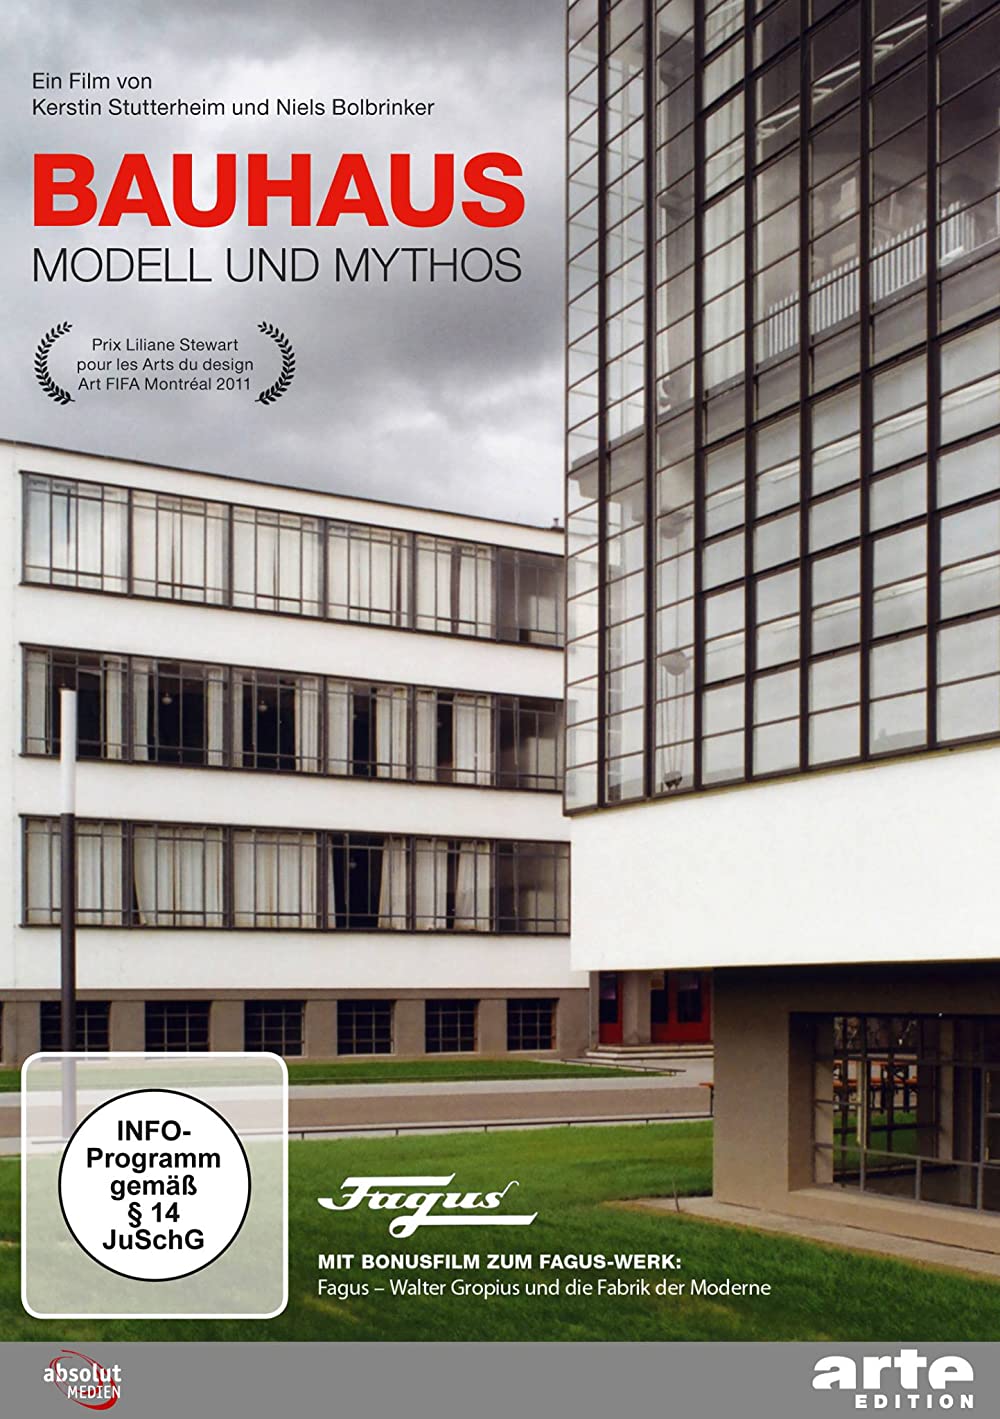 Filmbeschreibung zu Bauhaus - Mythos der Moderne